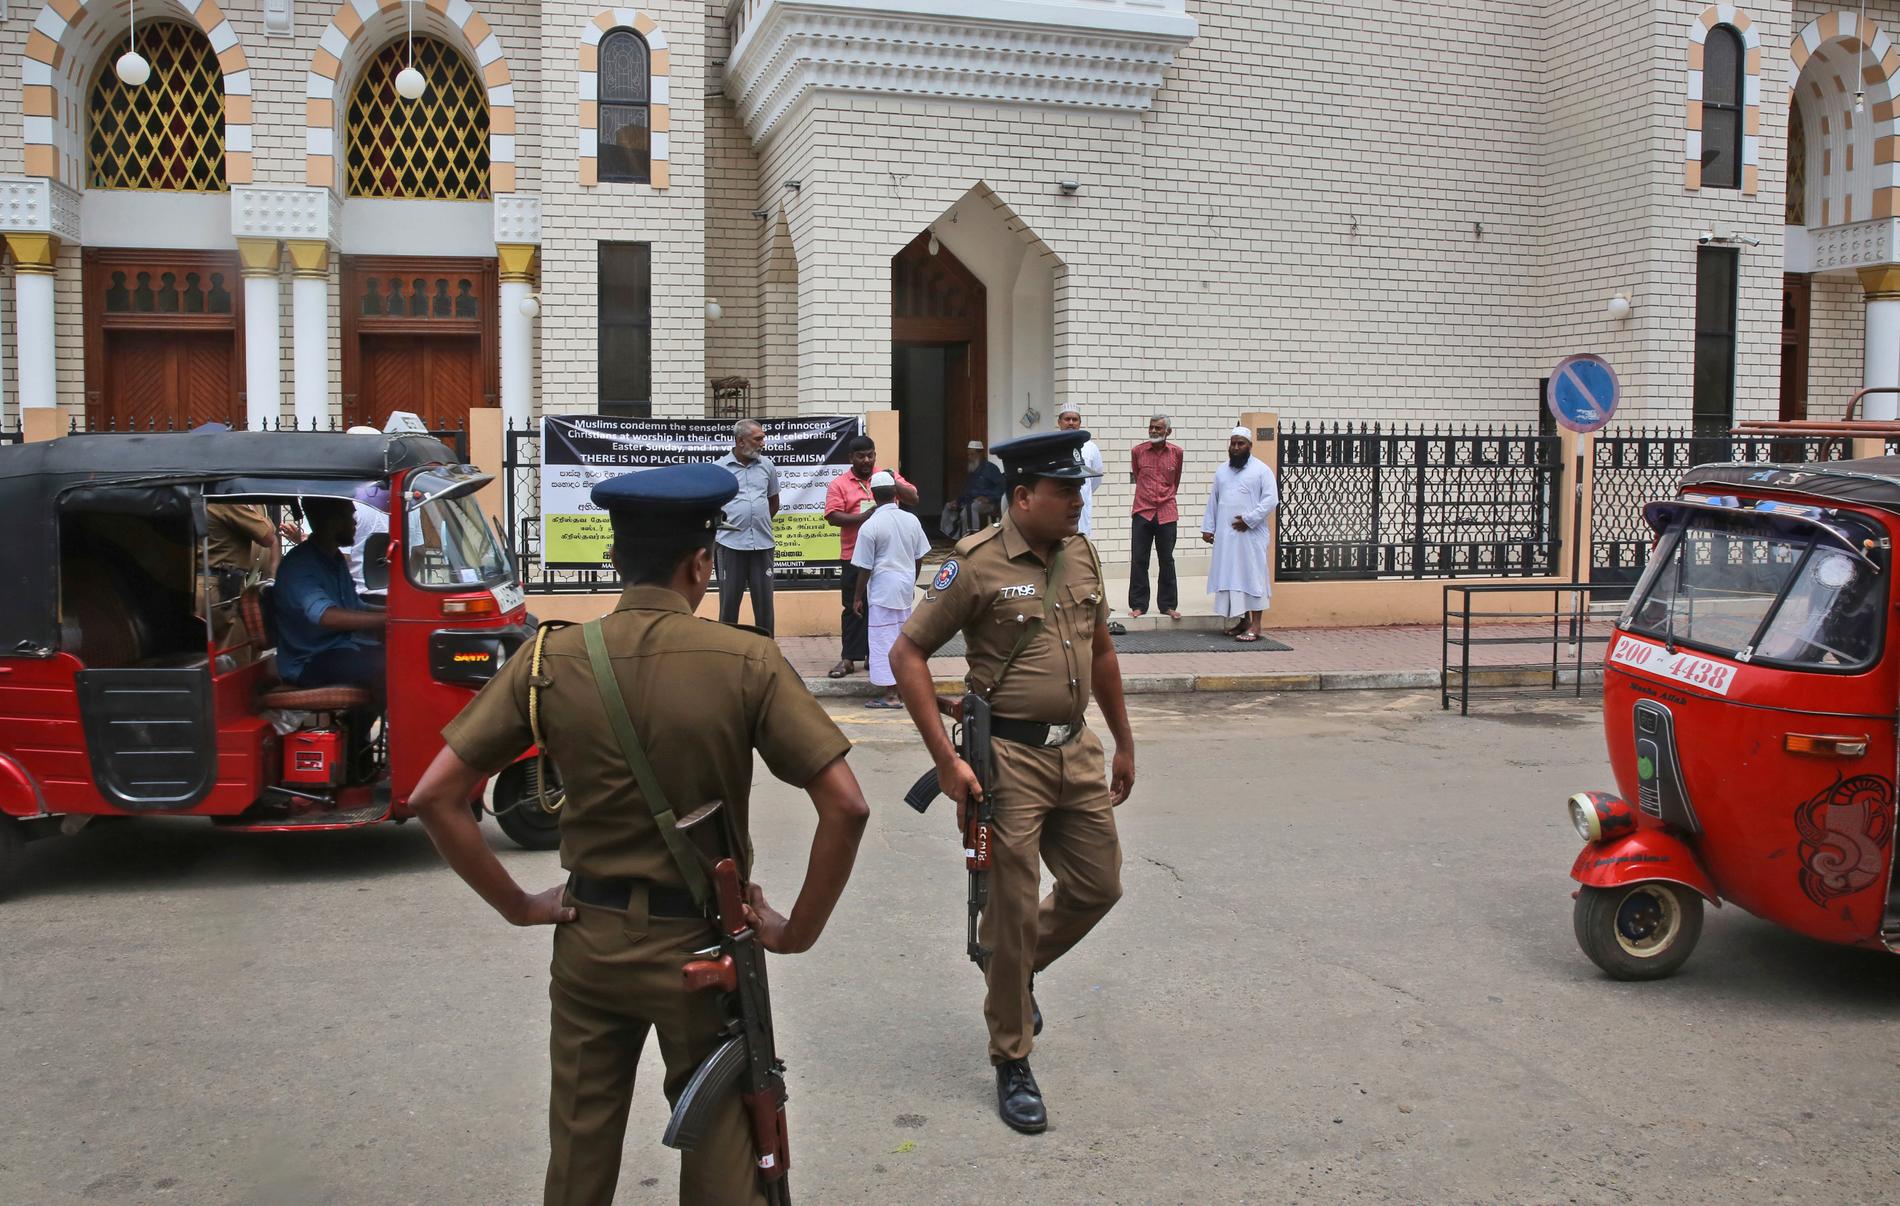 Säkerheten är förhöjd i Sri Lanka efter terrordåden. Bland annat vid landets moskéer, som pekas ut som potentiella måltavlor för hämndattacker.